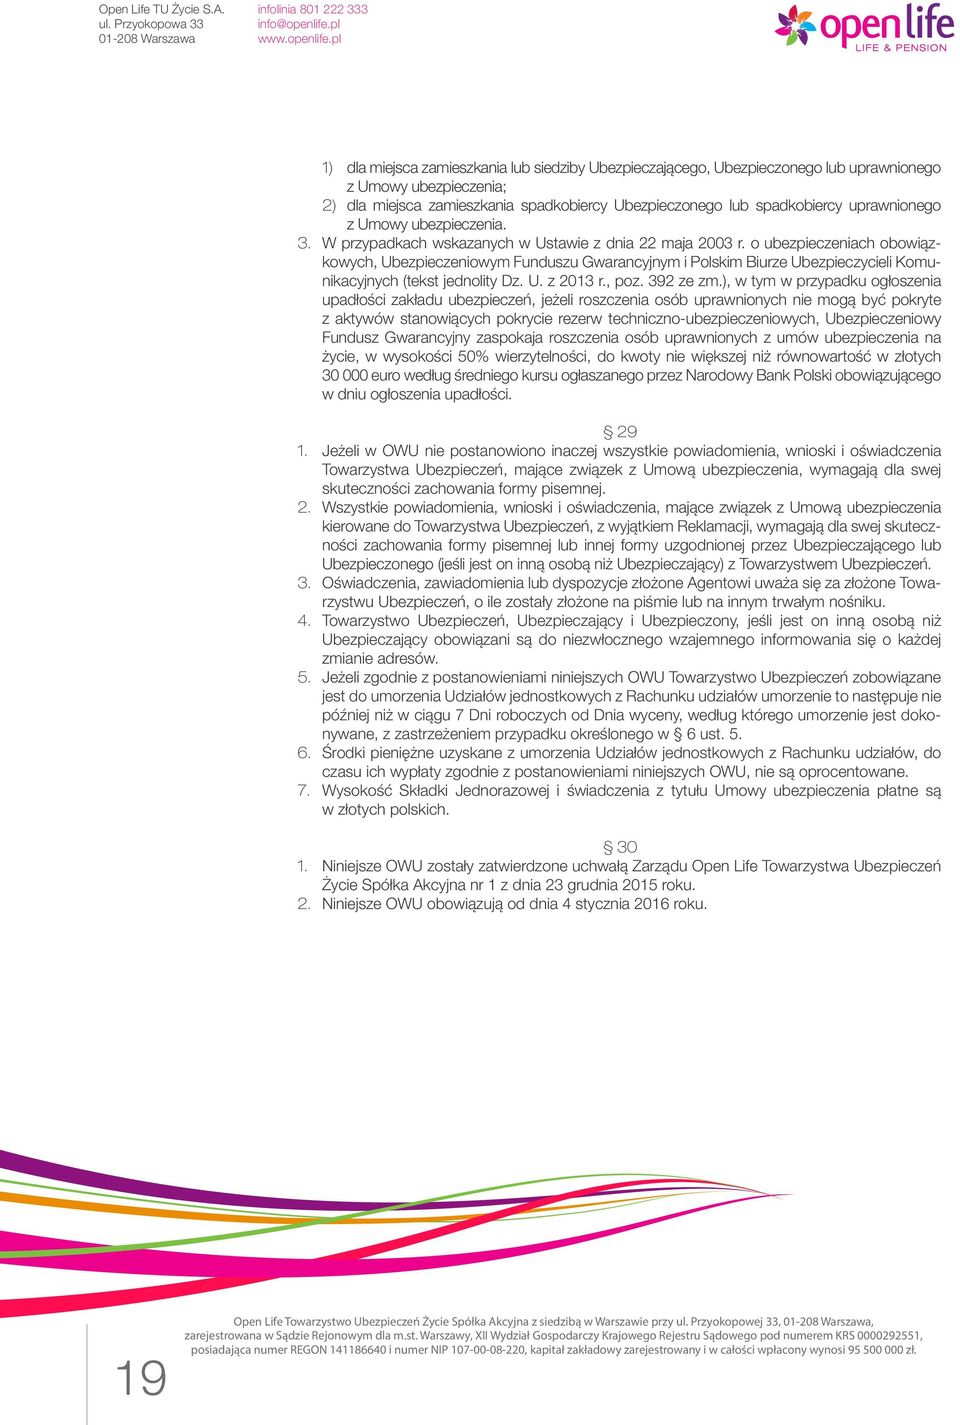 o ubezpieczeniach obowiązkowych, Ubezpieczeniowym Funduszu Gwarancyjnym i Polskim Biurze Ubezpieczycieli Komunikacyjnych (tekst jednolity Dz. U. z 2013 r., poz. 392 ze zm.